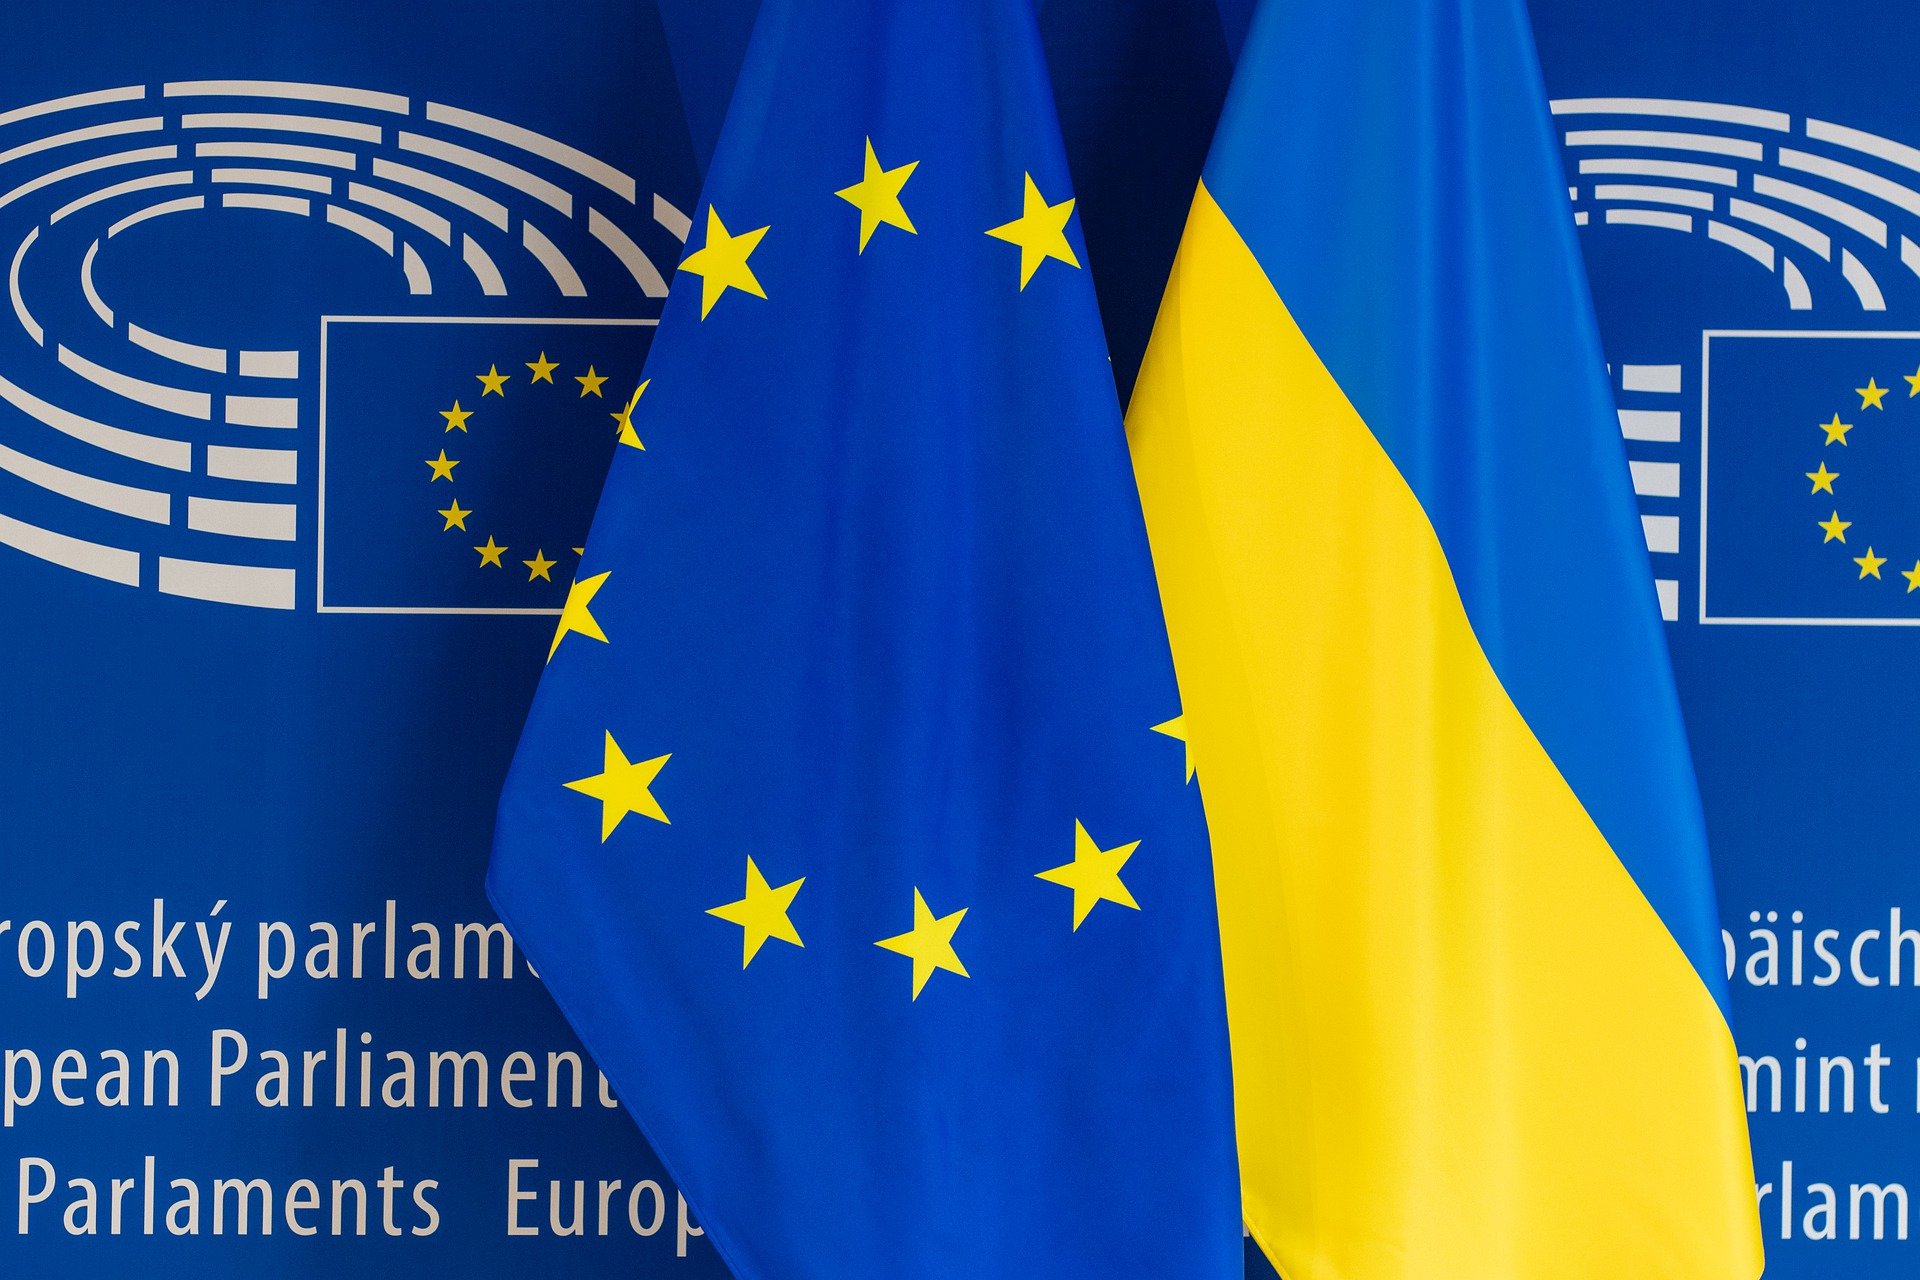 Членство украины. Украина и Европейский Союз. Флаг Украины и ЕС. Кандидатство Украины в Евросоюз. США ЕС Украина.